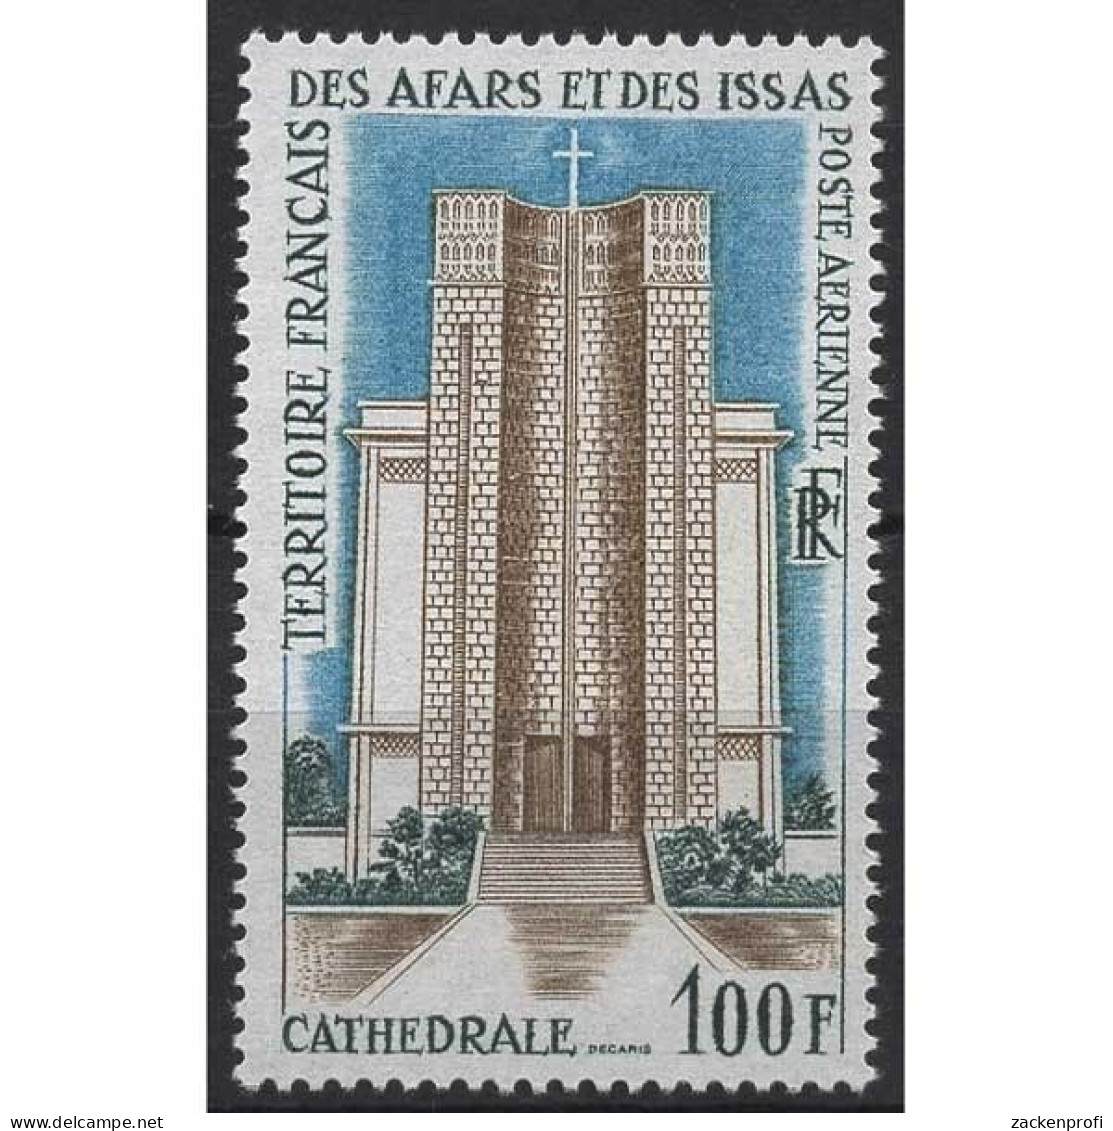 Afar Und Issa 1969 Öffentliche Gebäude Kathedrale Kirche 25 Postfrisch - Unused Stamps